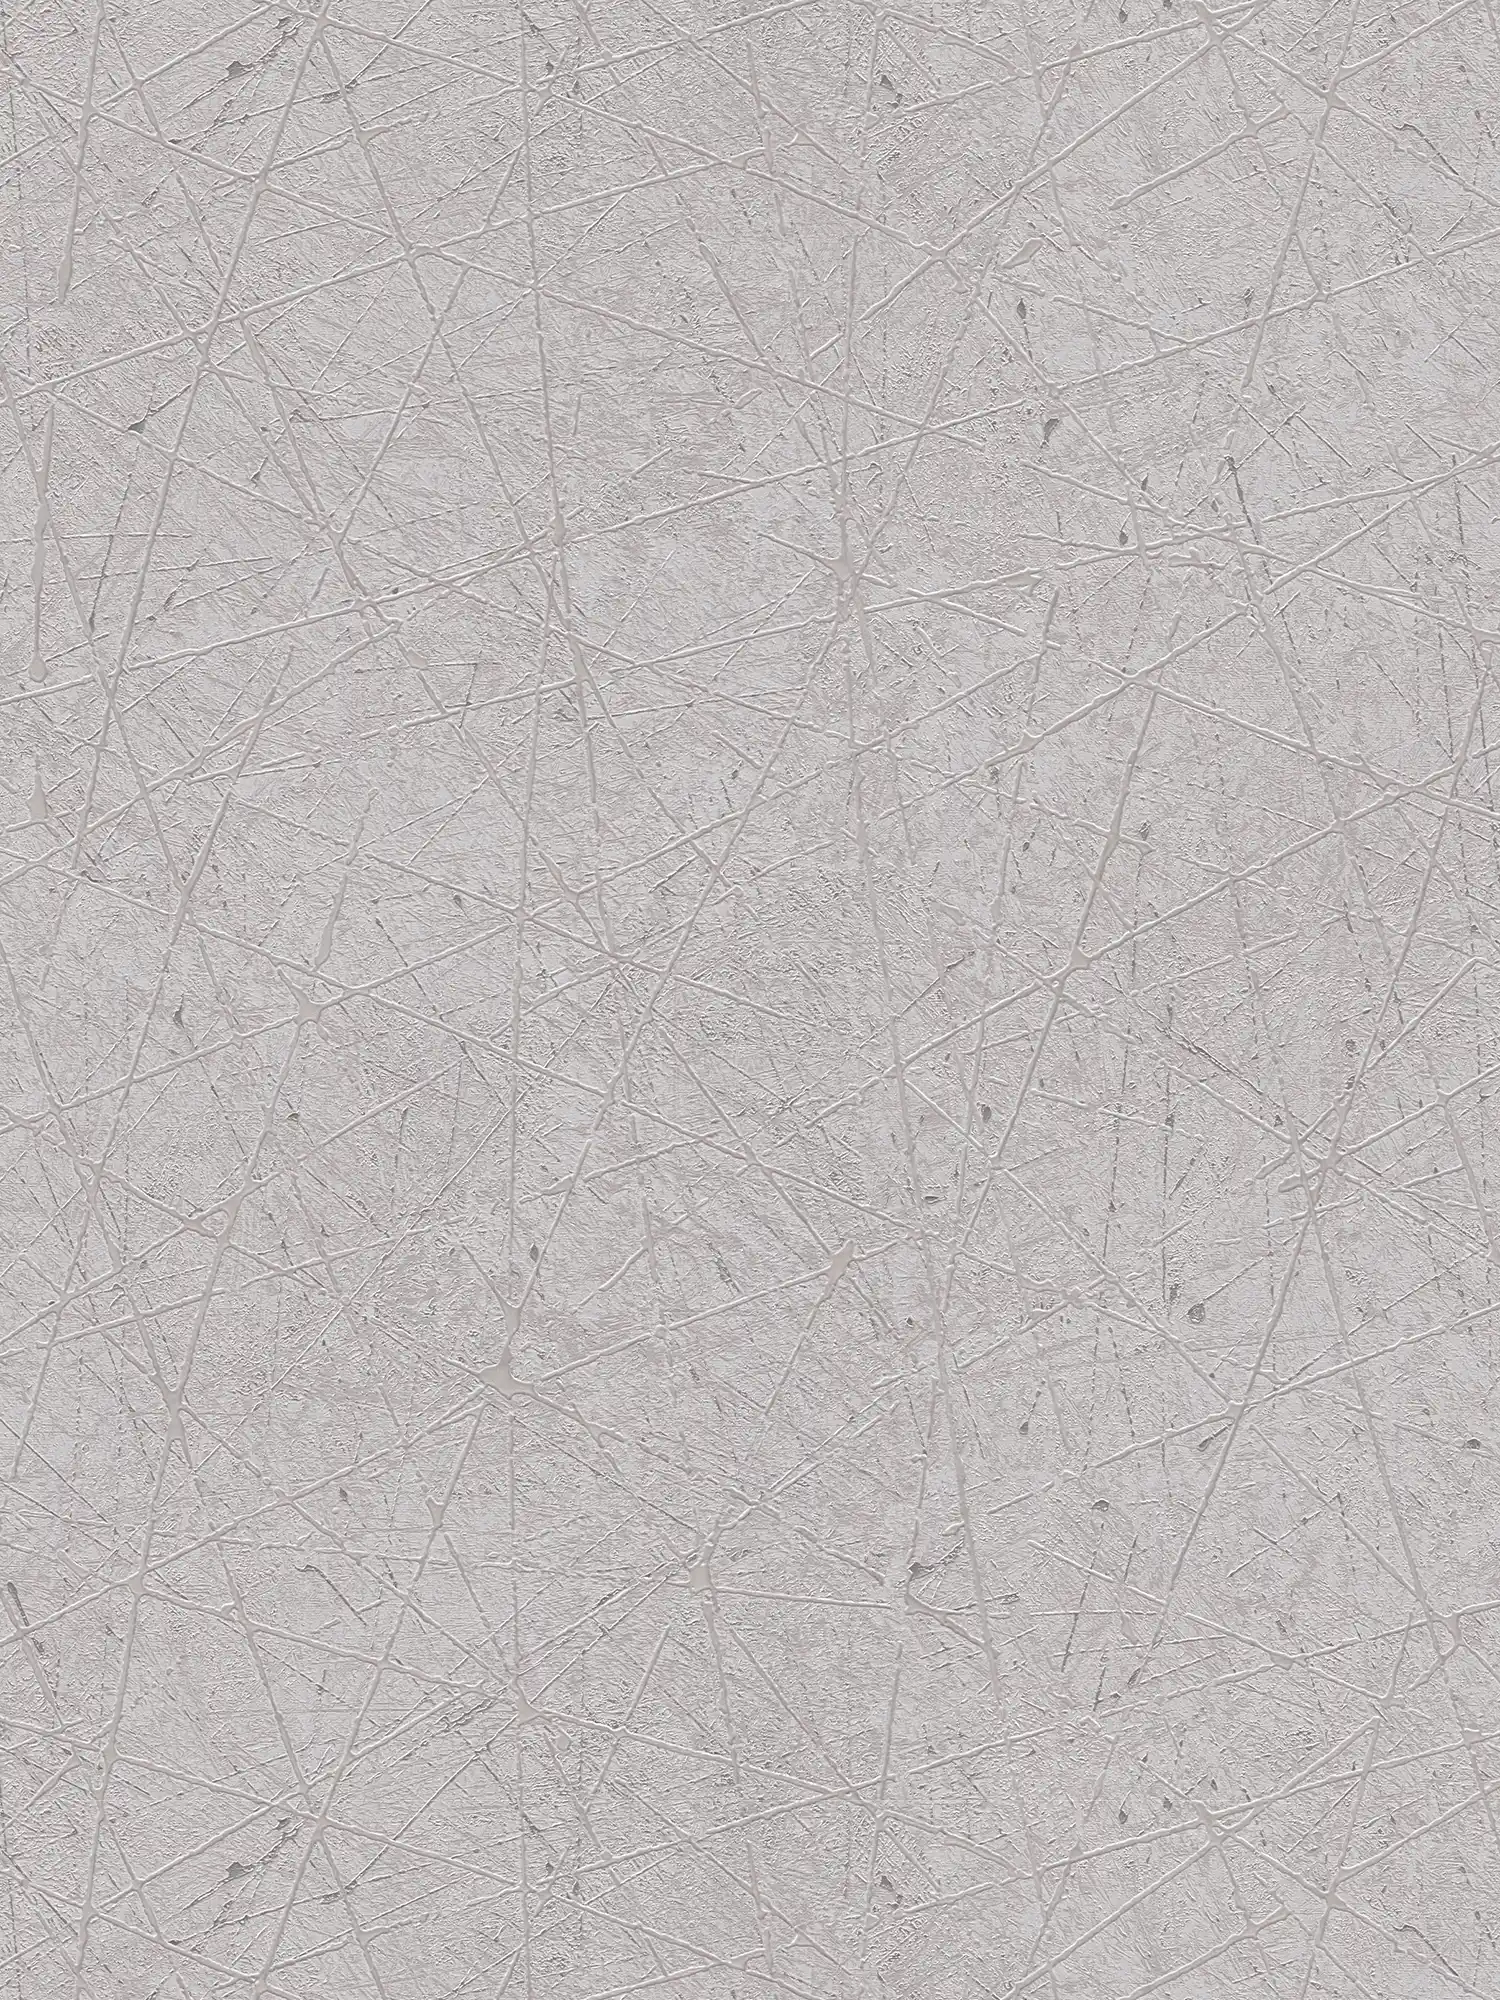 Abstract driehoekpatroon grafisch behang - grijs, zilver
